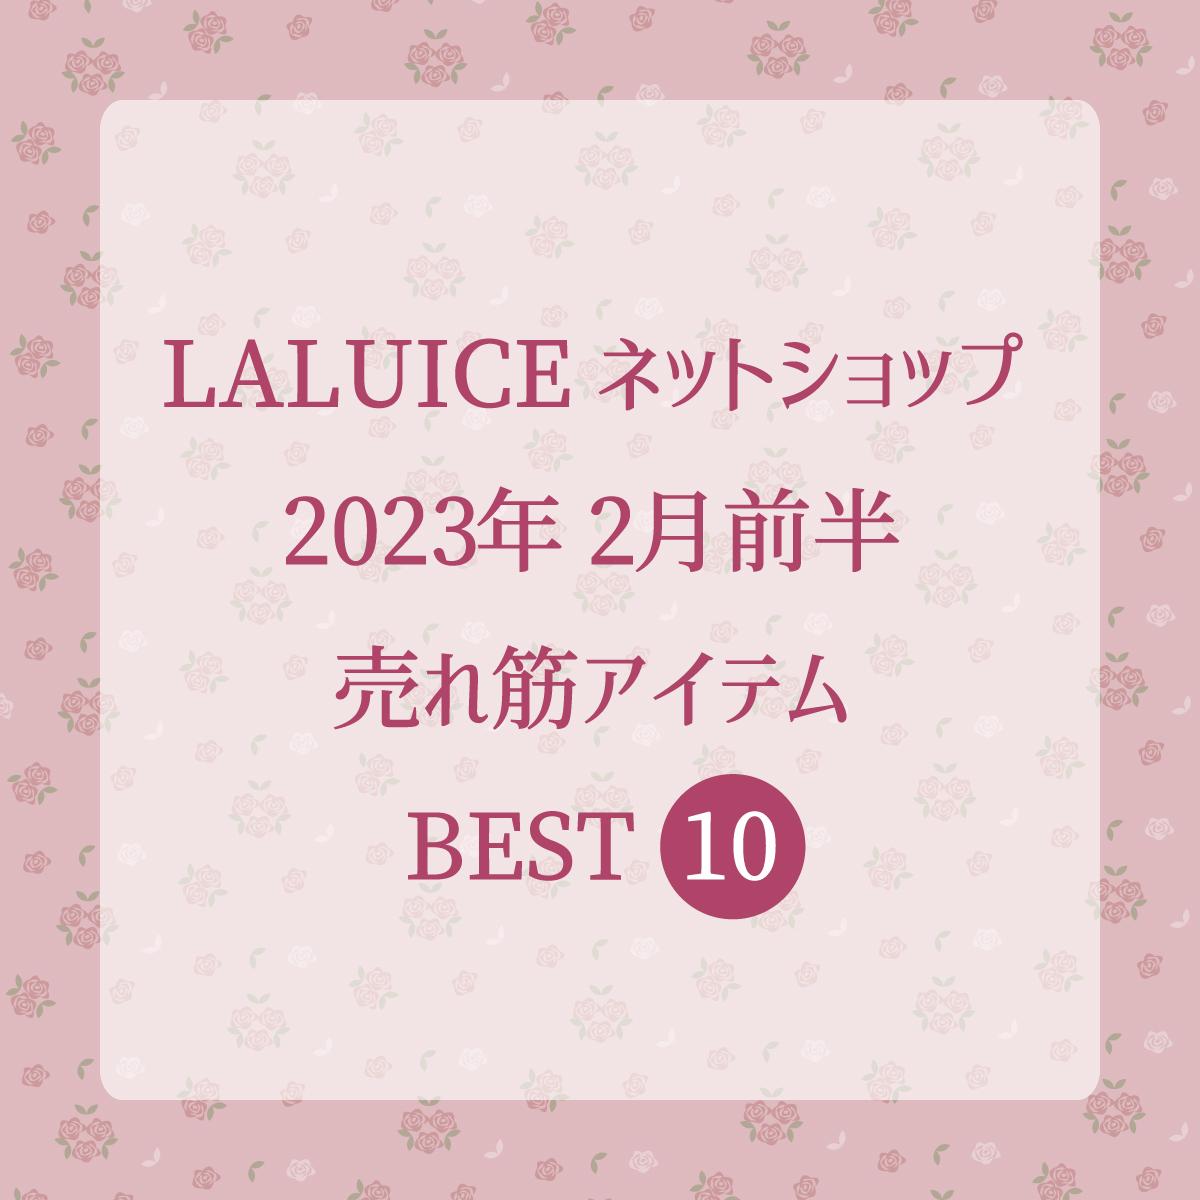 2023年2月前半(2/1～2/15)LALUICEネットショップ売れ筋アイテム BEST10